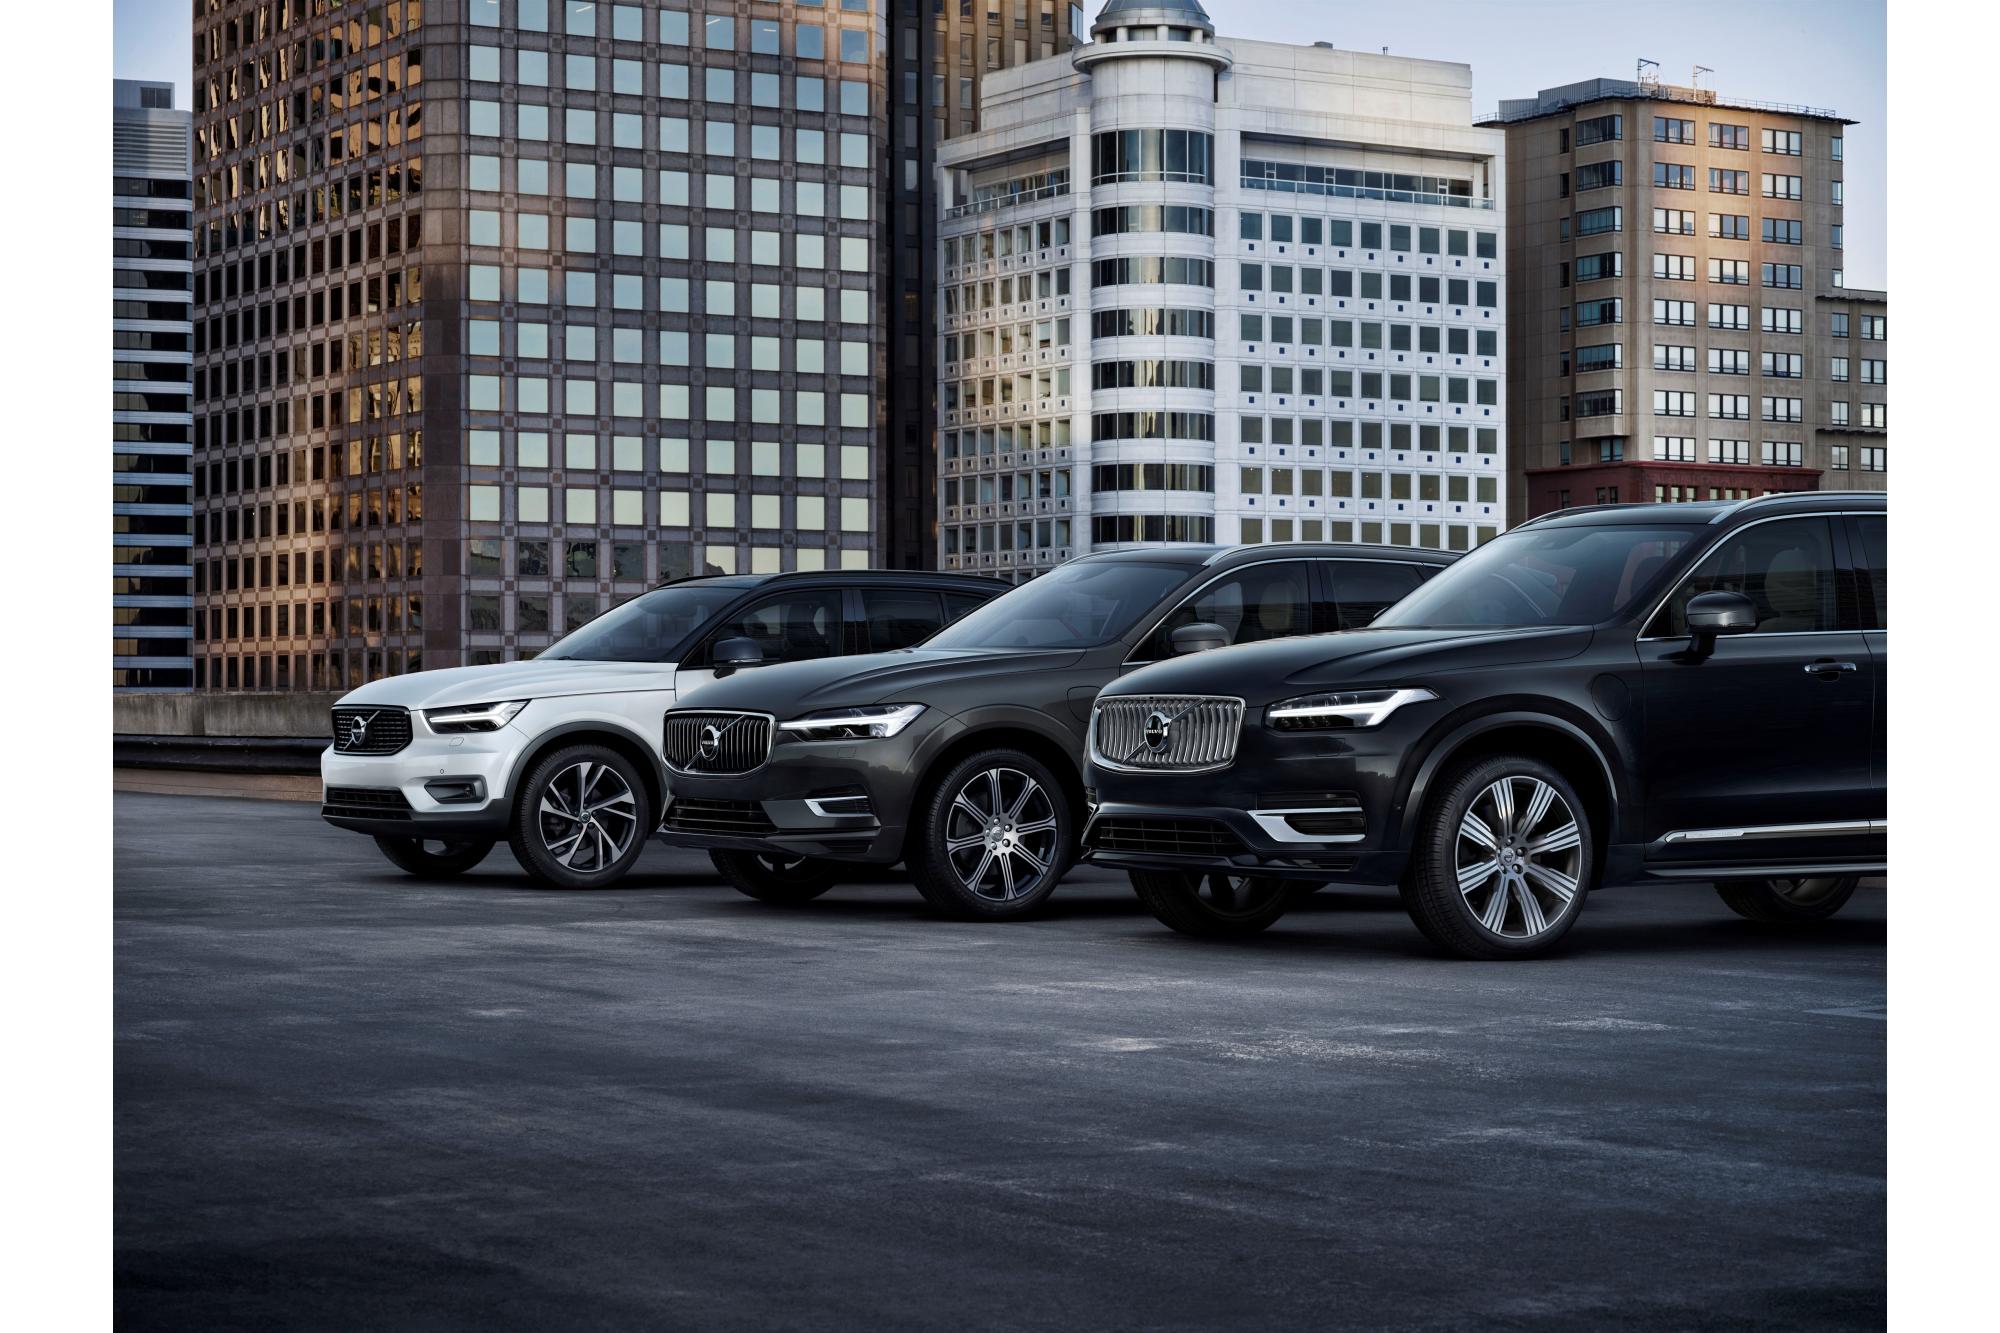 2019: Έκτη συνεχής χρονιά ρεκόρ για τη Volvo με αιχμή την πολυβραβευμένη γκάμα των SUV της